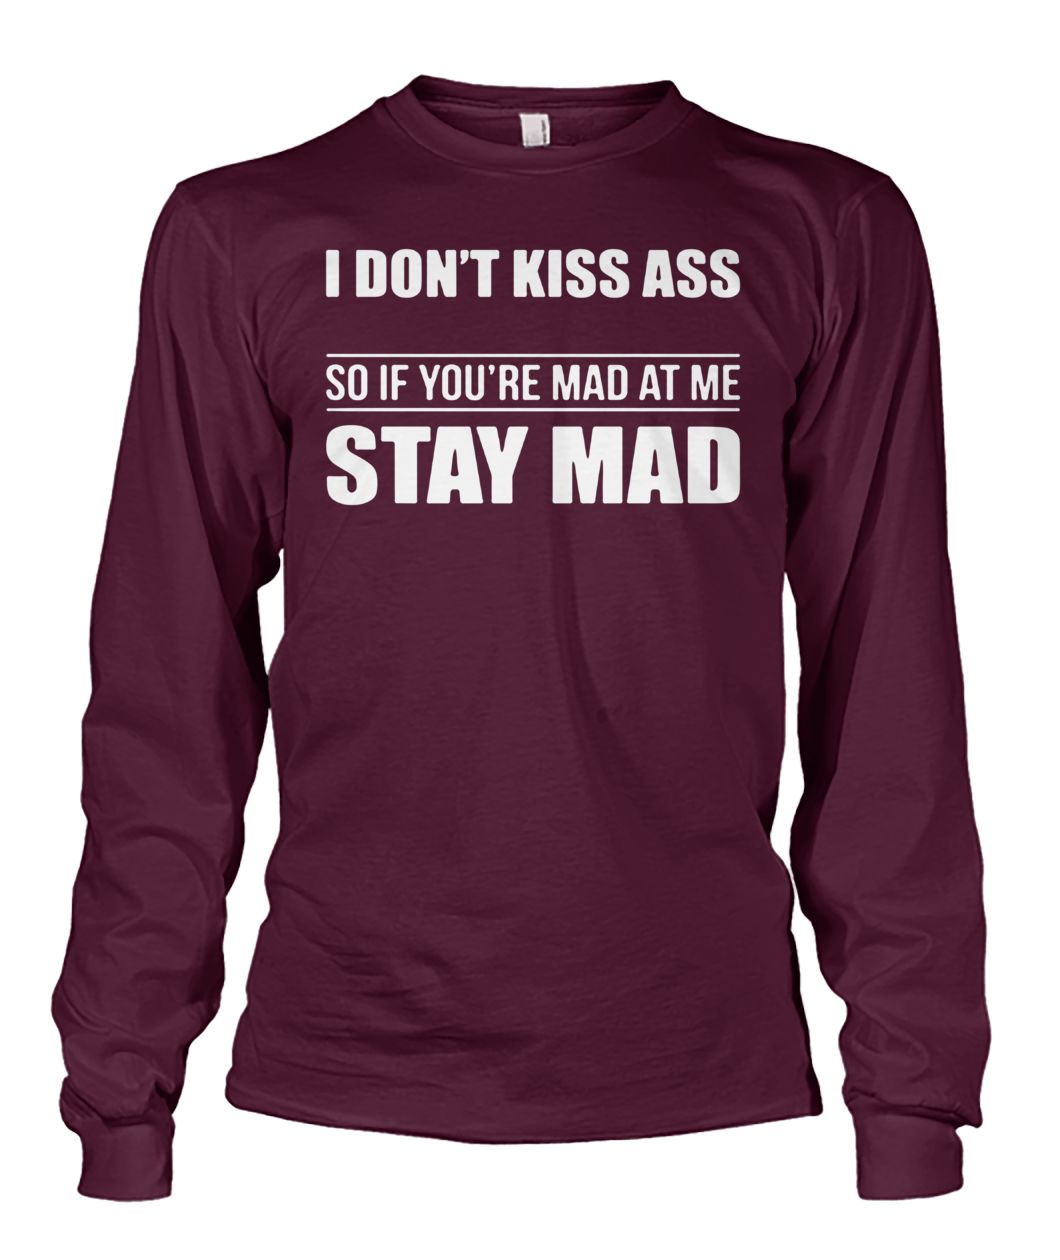 I don't kiss ass so if you're mad at me stay mad unisex long sleeve